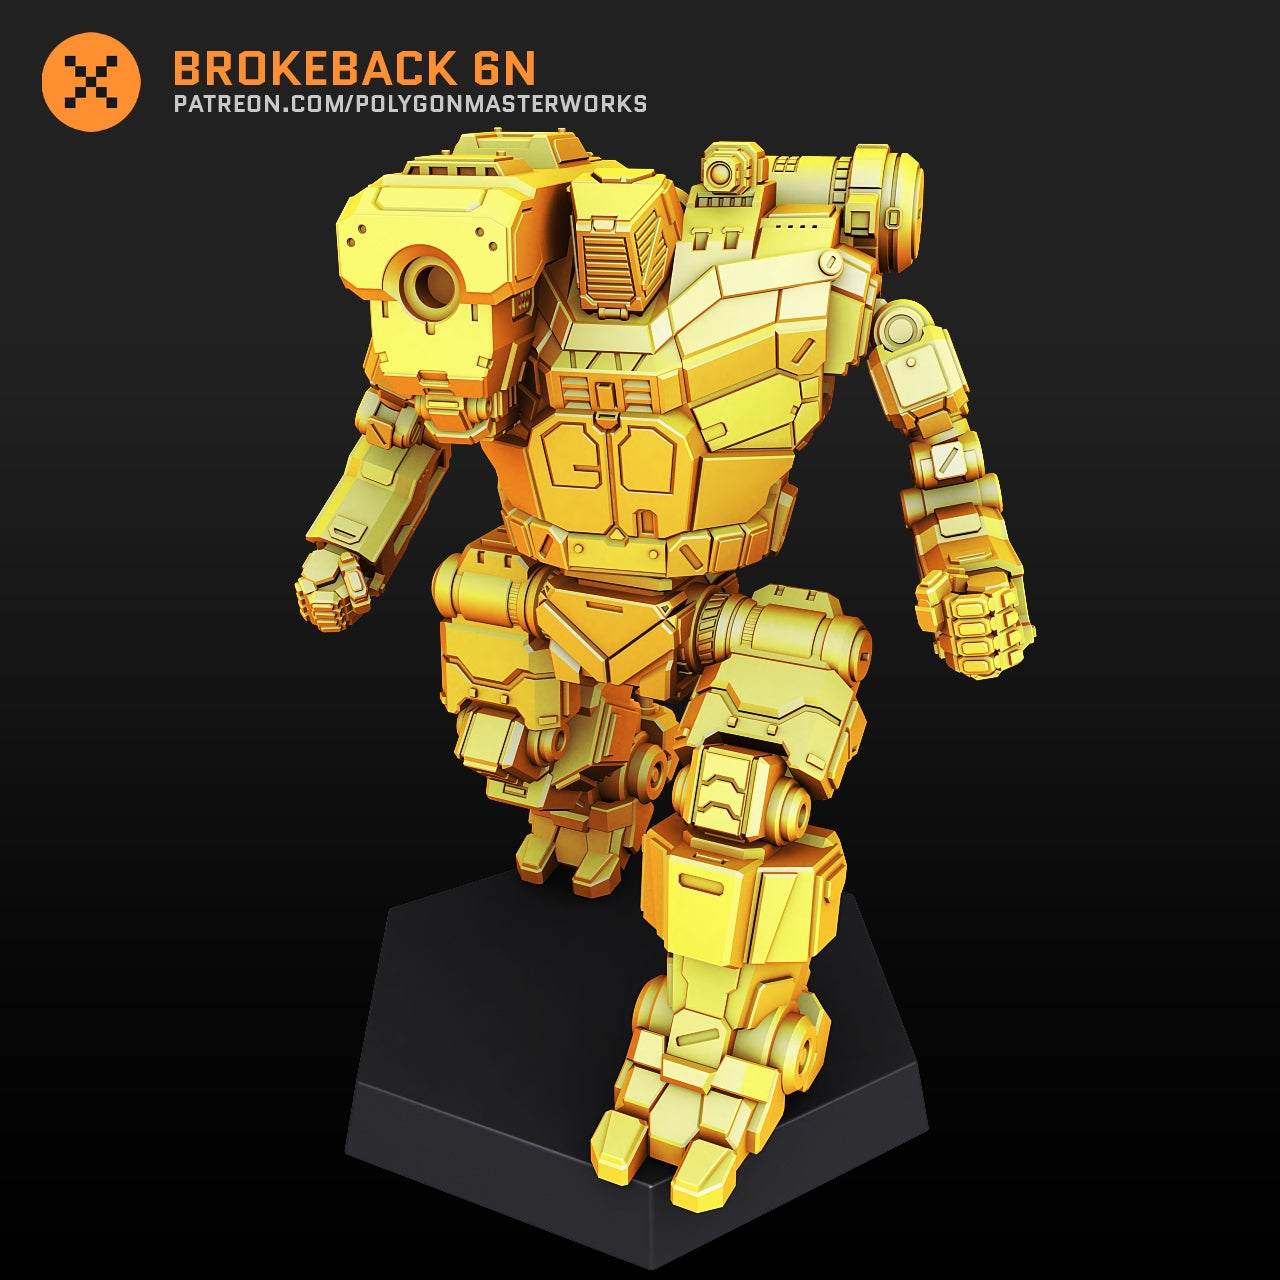 Brokeback 6N (By PMW) Alternate Battletech Mechwarrior Miniatures